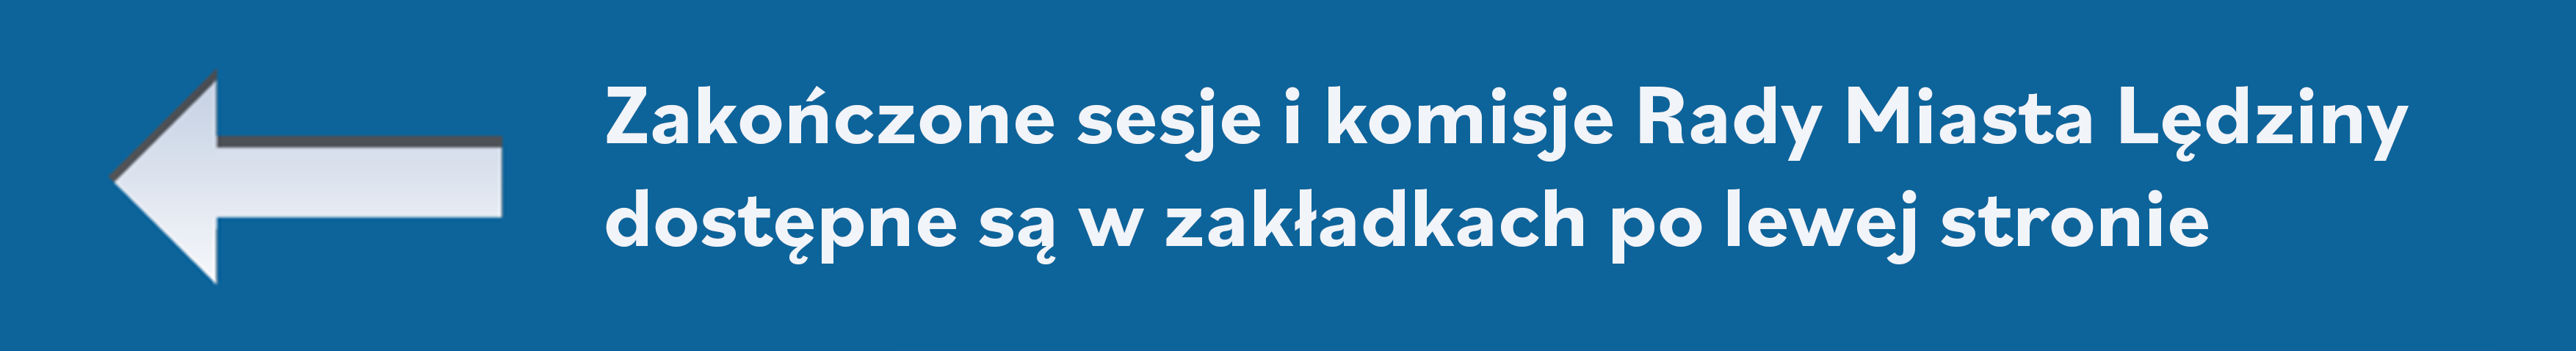 Niebieska Belka informacyjna o treści "Zakończone sesje i komisje Rady Miasta Lędziny dostępne są w zakładkach po lewej stronie".